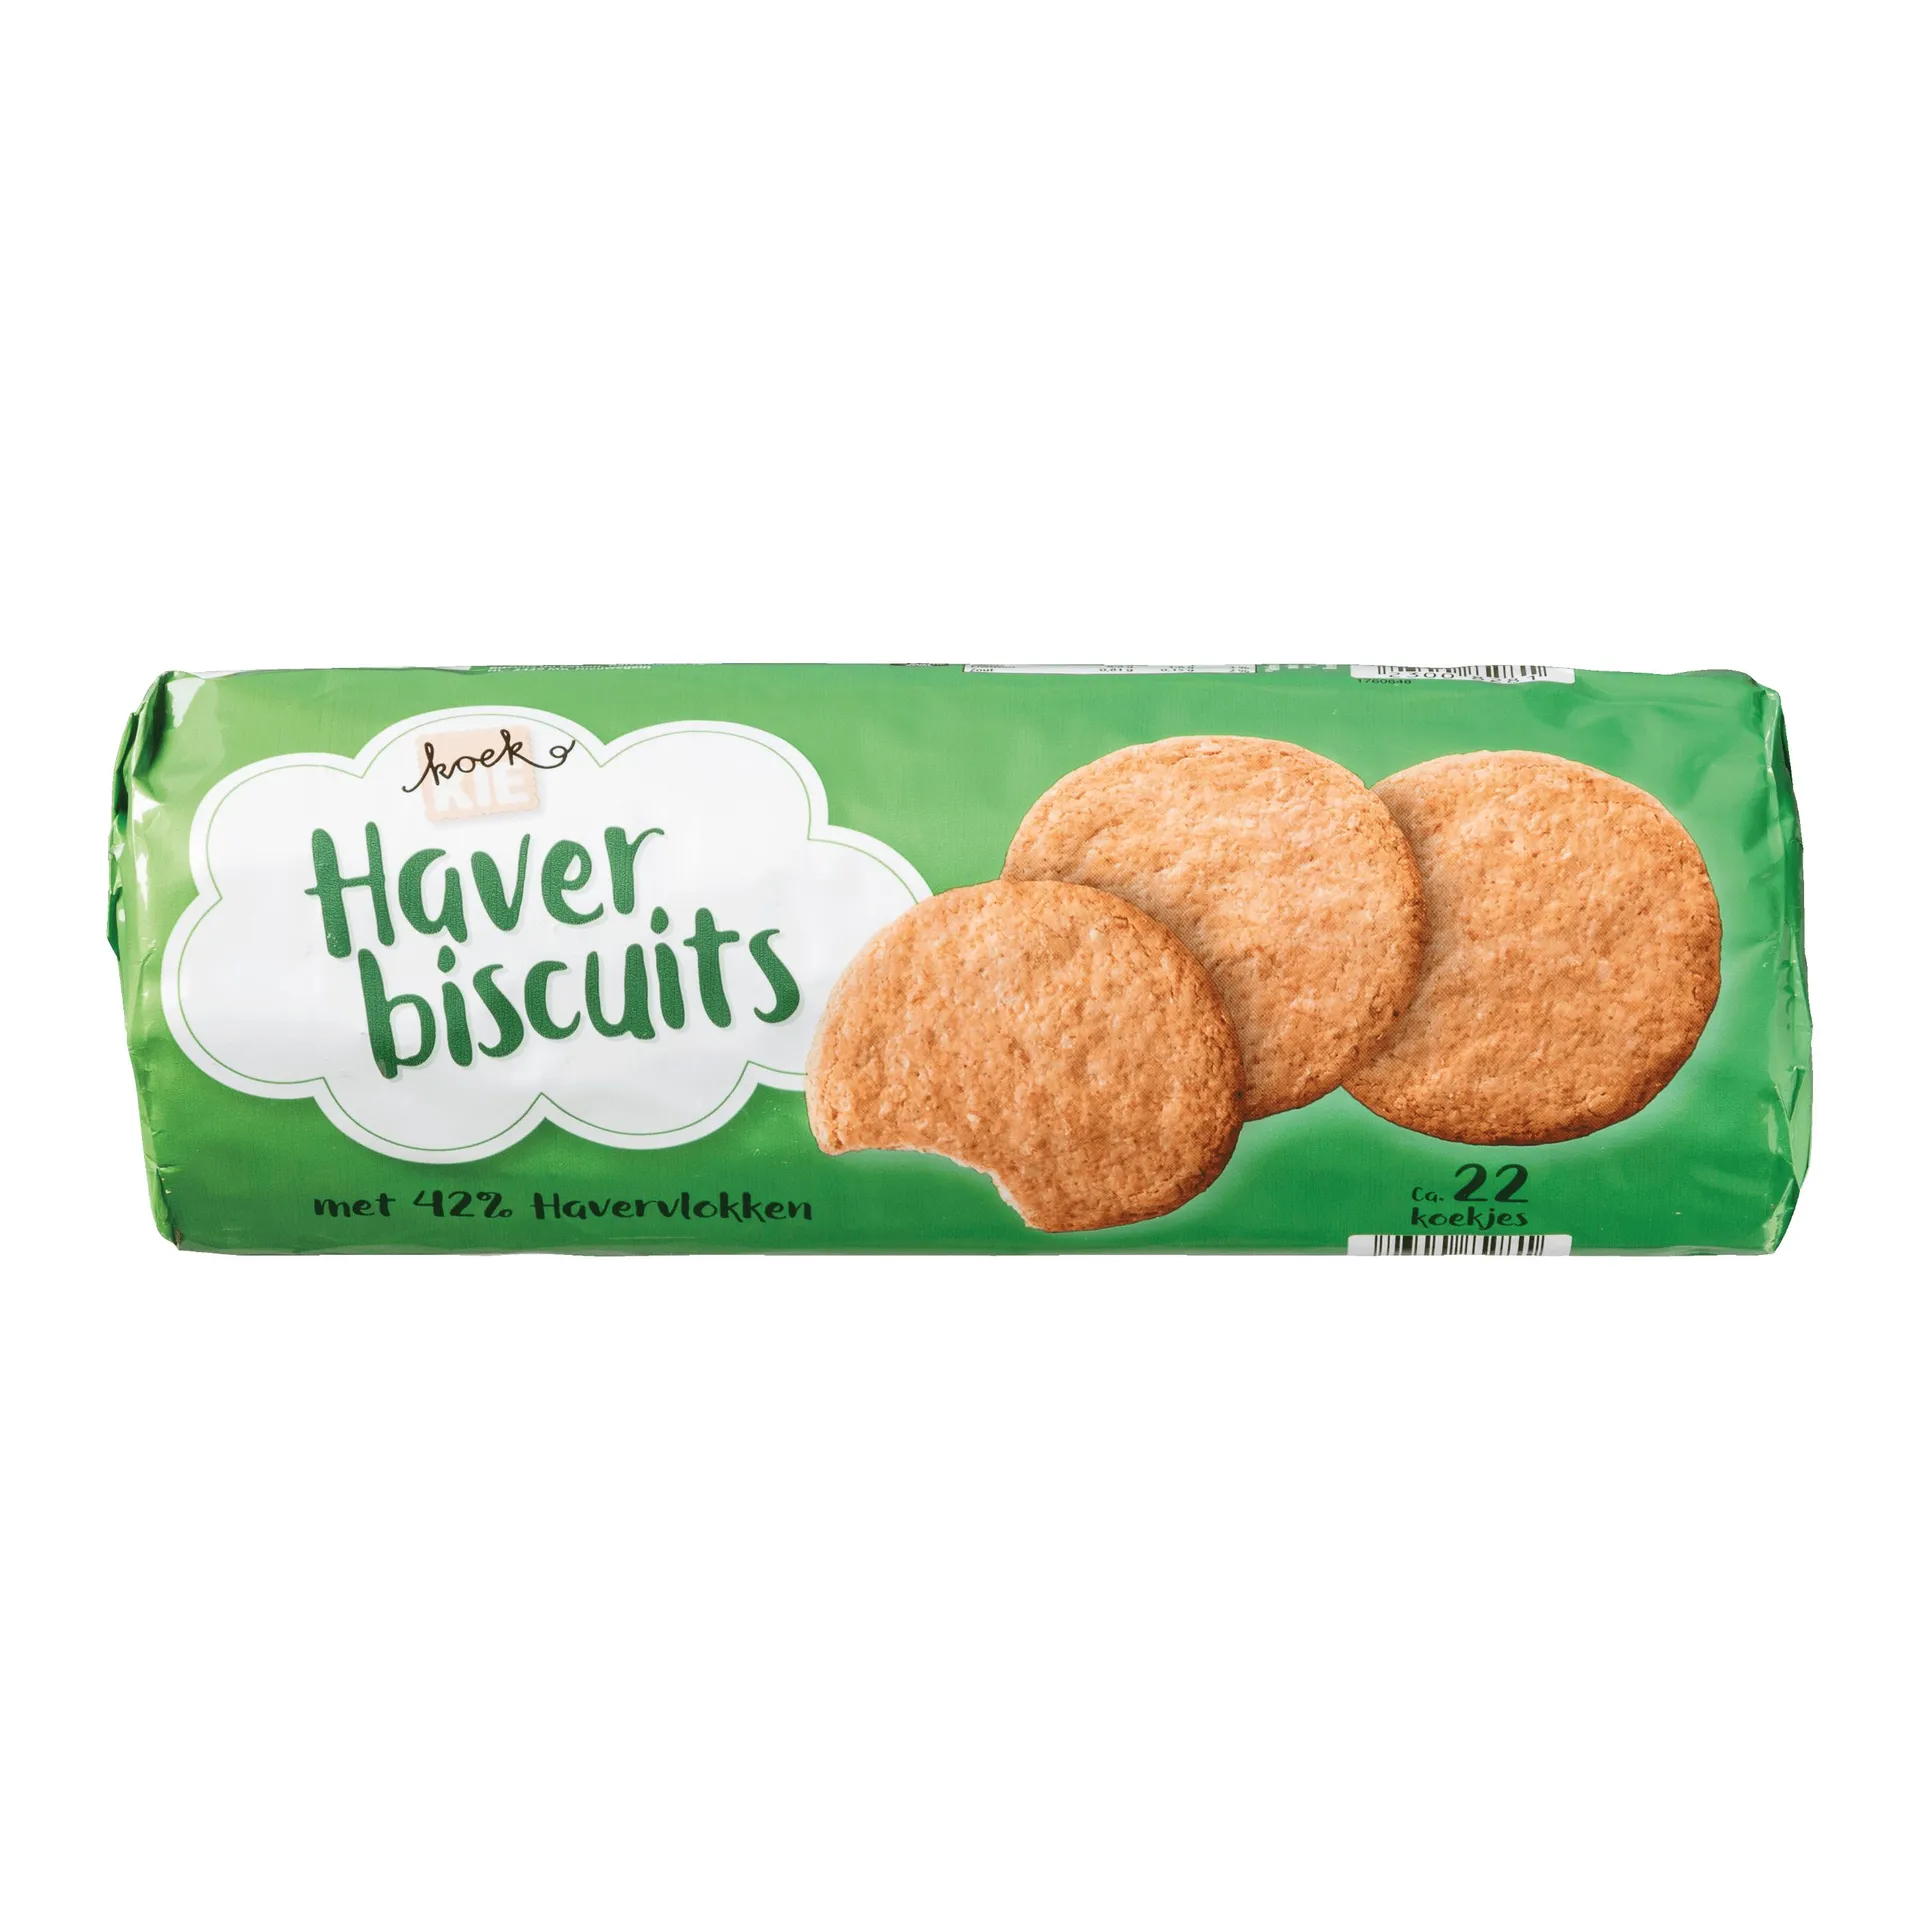 Haver biscuits